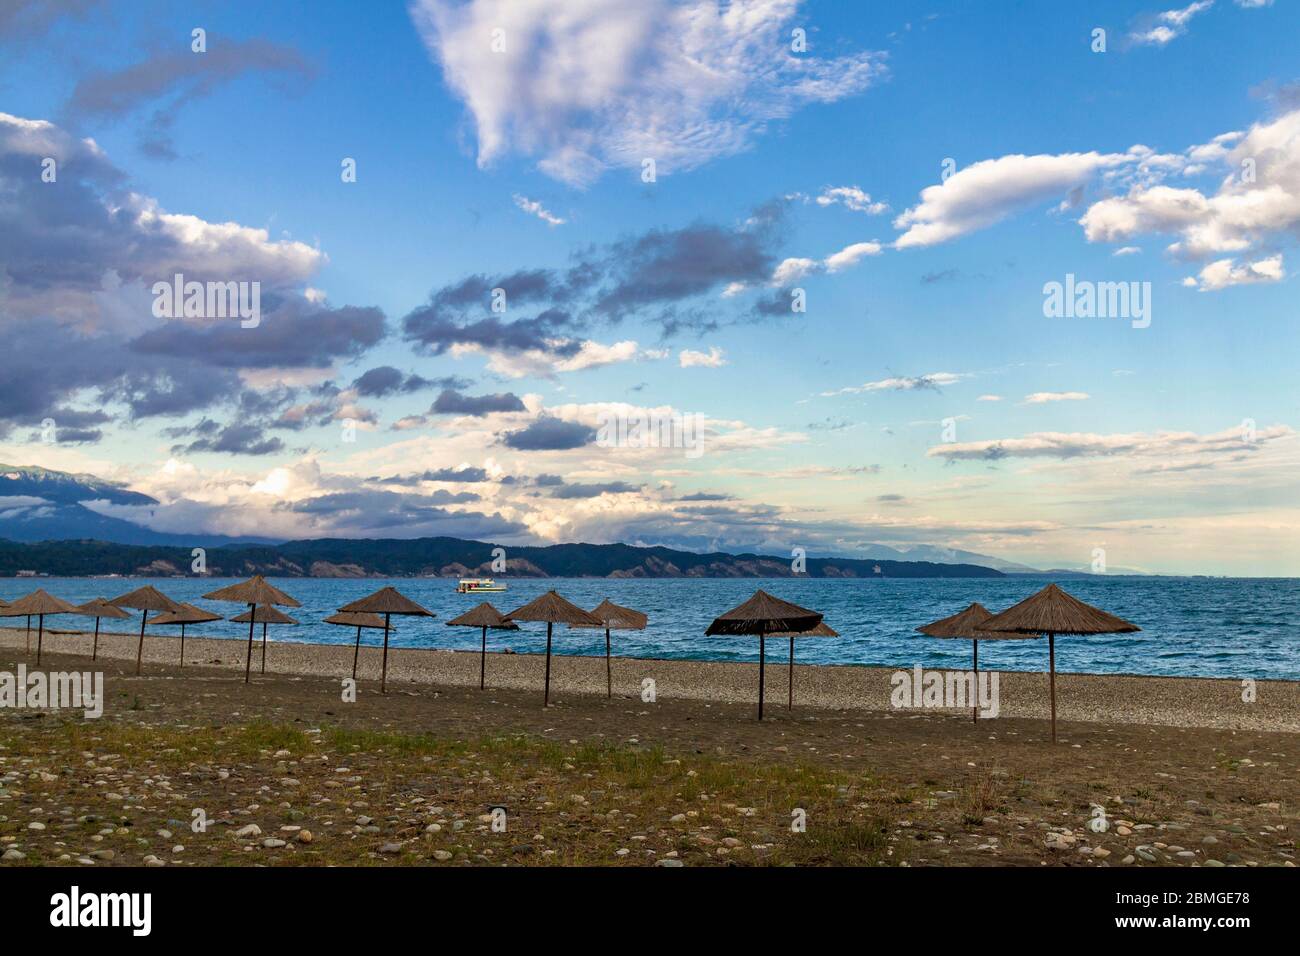 Parasols de plage de paille sur la côte vide de la mer Noire en Abkhazie, Pitsunda au coucher du soleil. Plage de galets, montagnes, mer, ciel avec nuages Banque D'Images